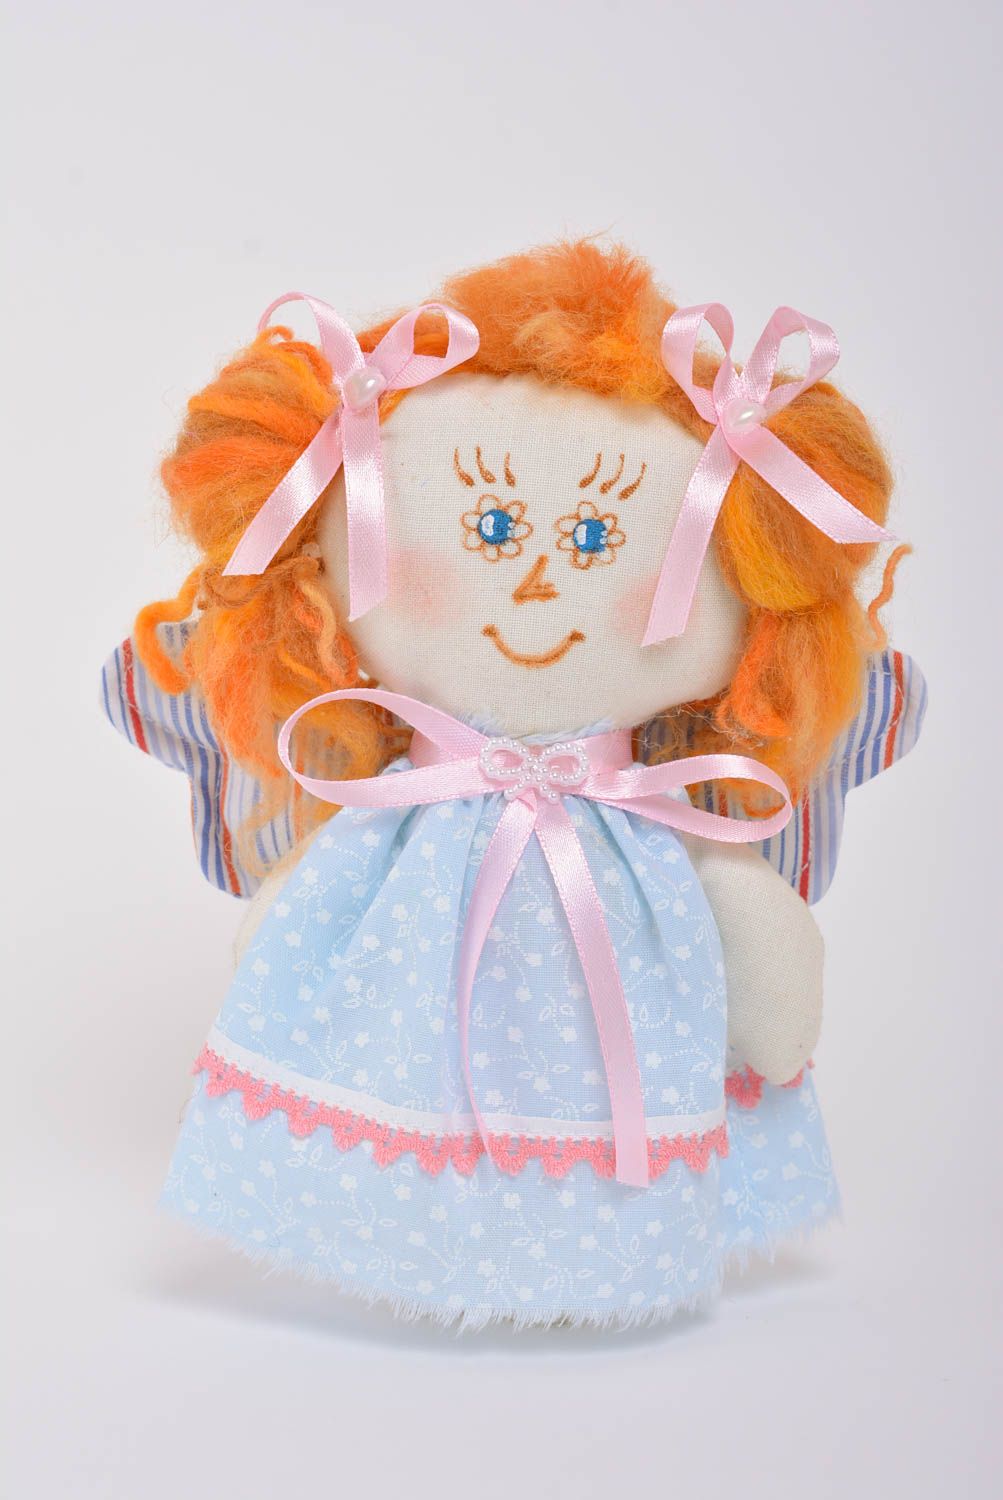 Игрушка кукла из ткани маленького размера с рыжими волосами ручная работа фото 1